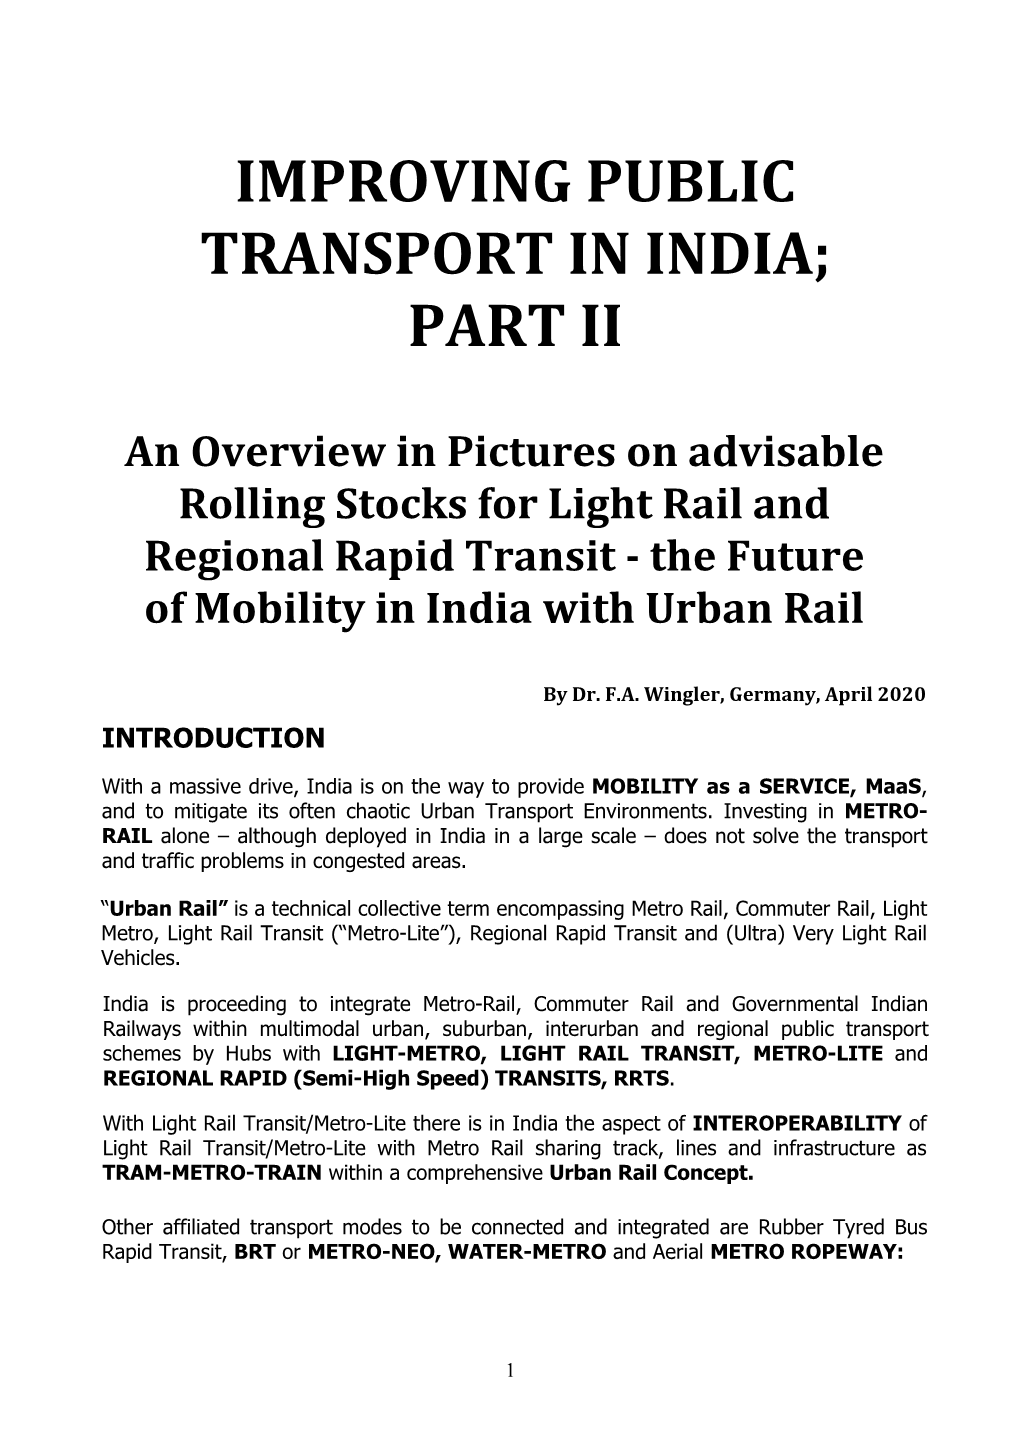 Improving Public Transport in India; Part Ii